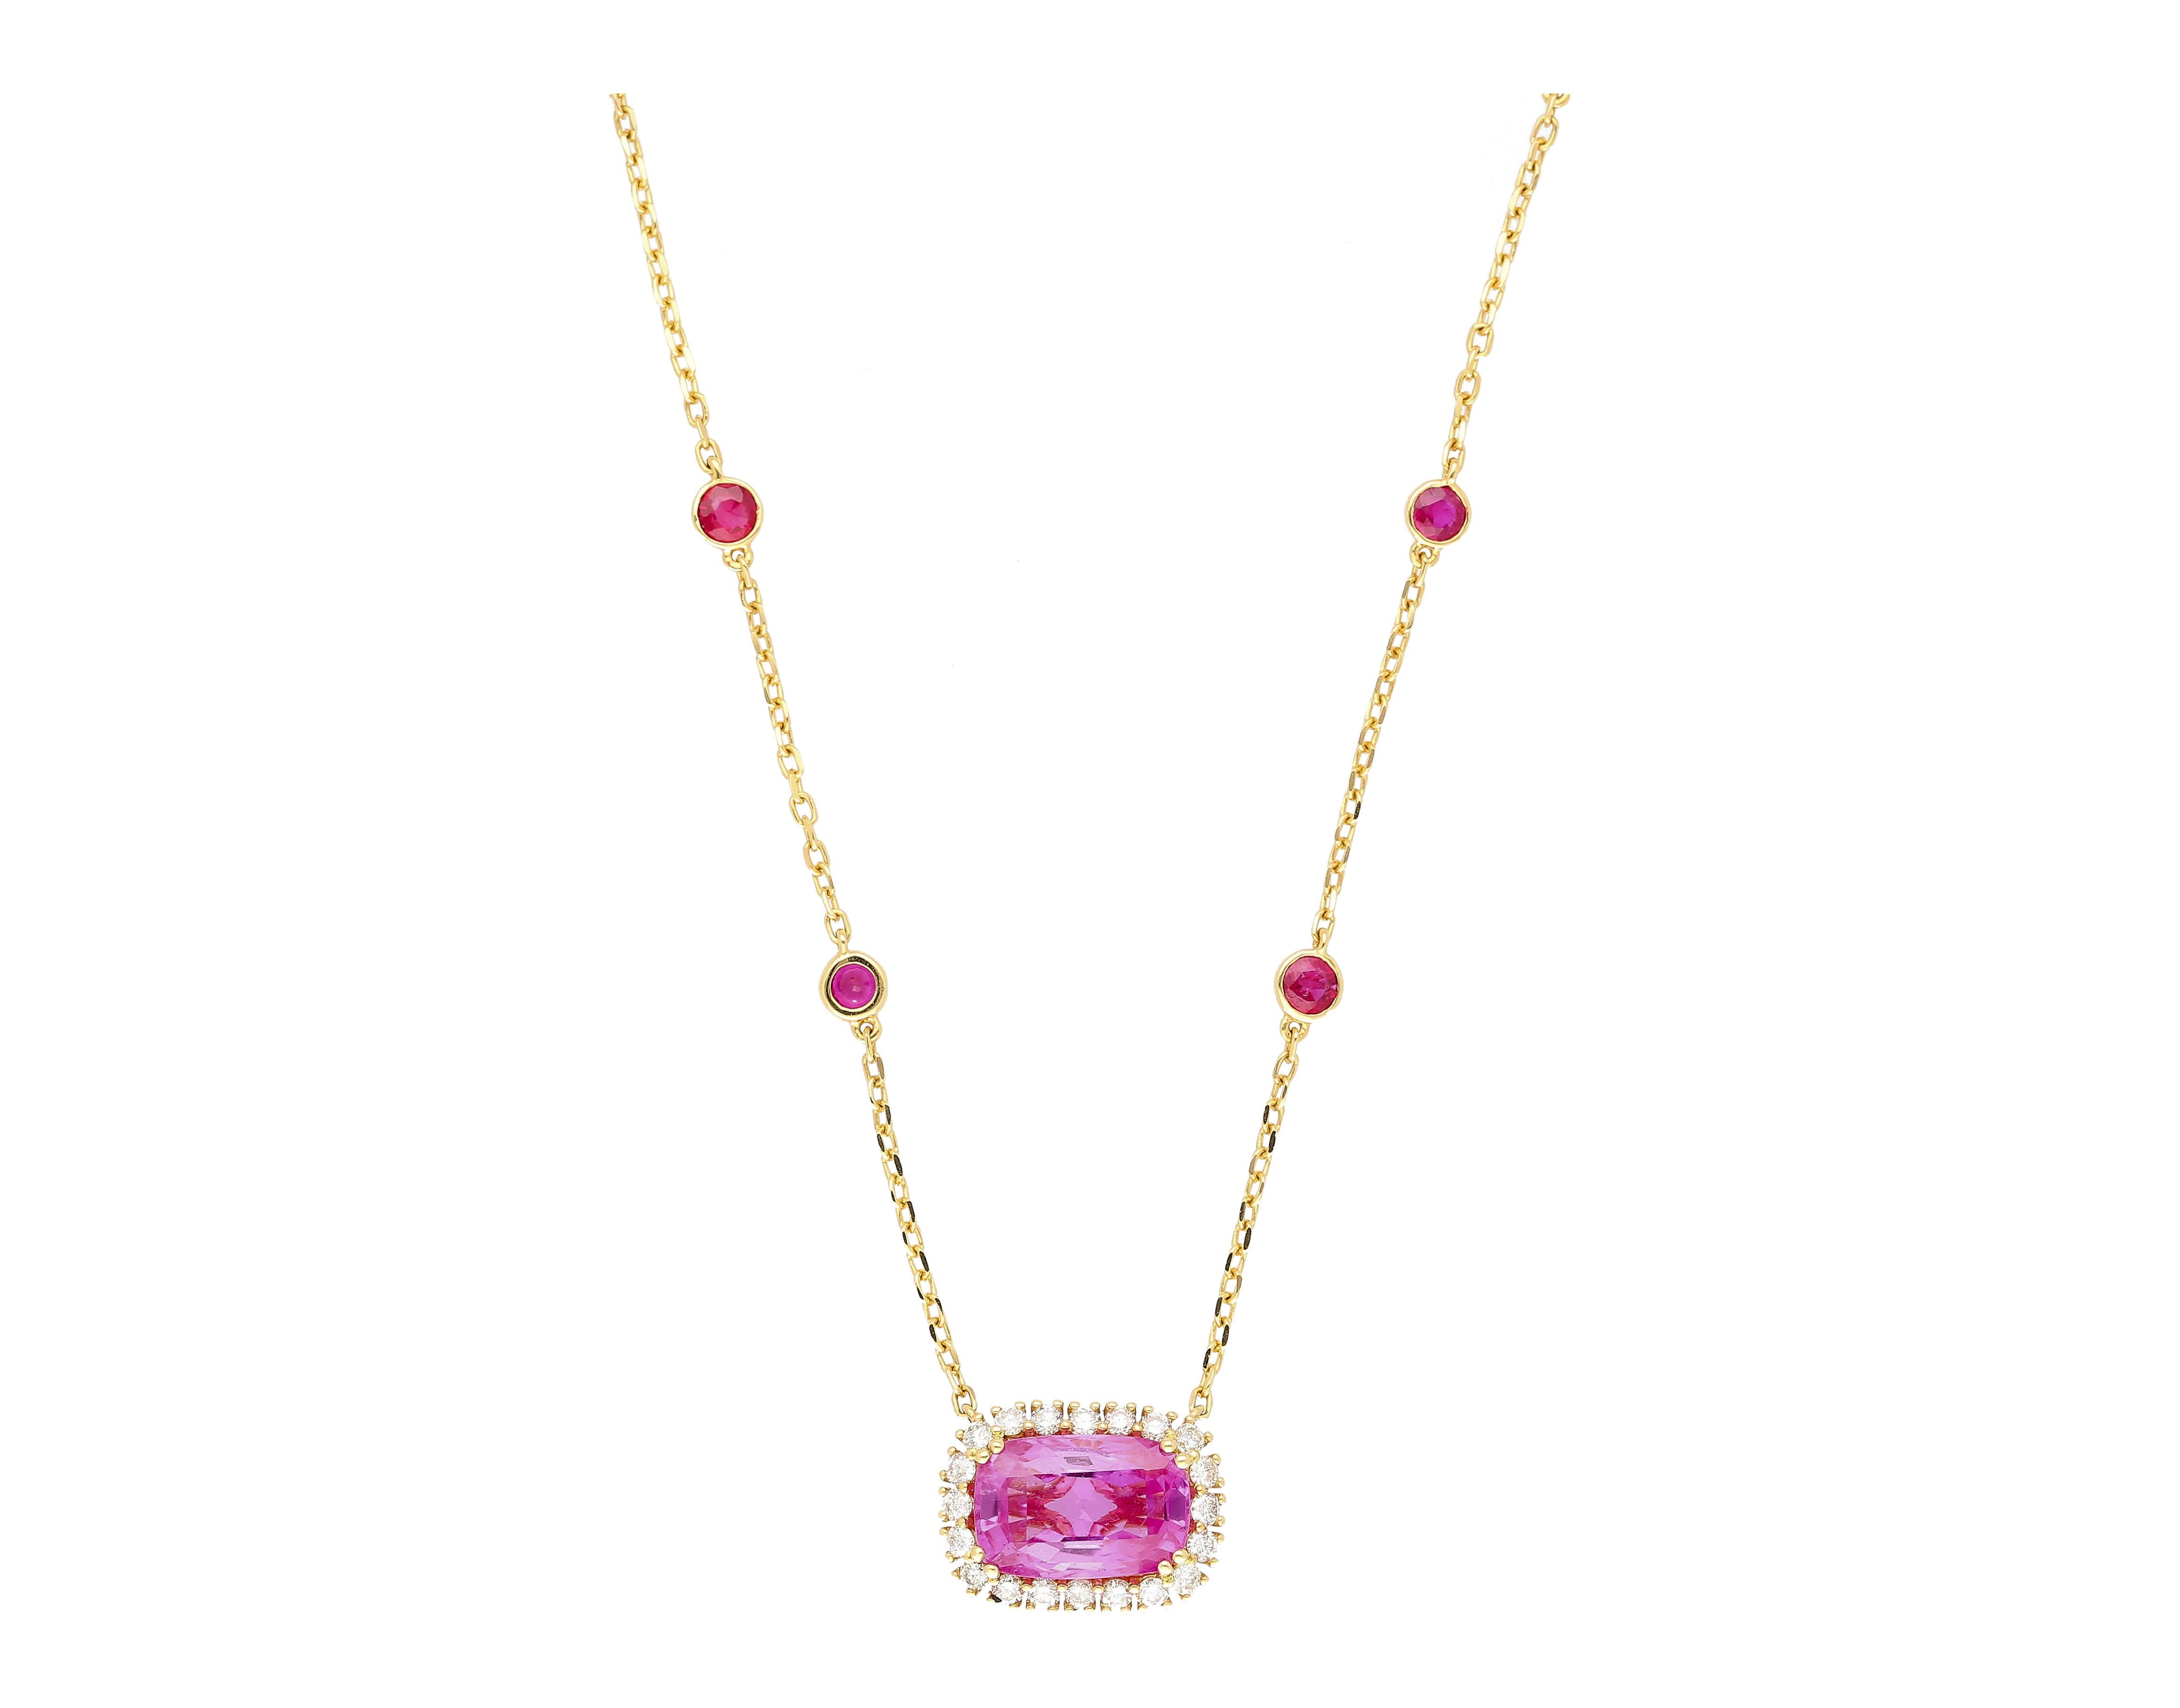 GRS-zertifiziert 5,10 Karat Kissenschliff Ceylon Ursprung rosa Saphir Halskette. Der rosafarbene Saphir ist in 18 Karat Gelbgold gefasst und von 20 runden Diamanten von insgesamt 0,46 Karat umgeben. An der Kette der Halskette sind 8 Rubine mit